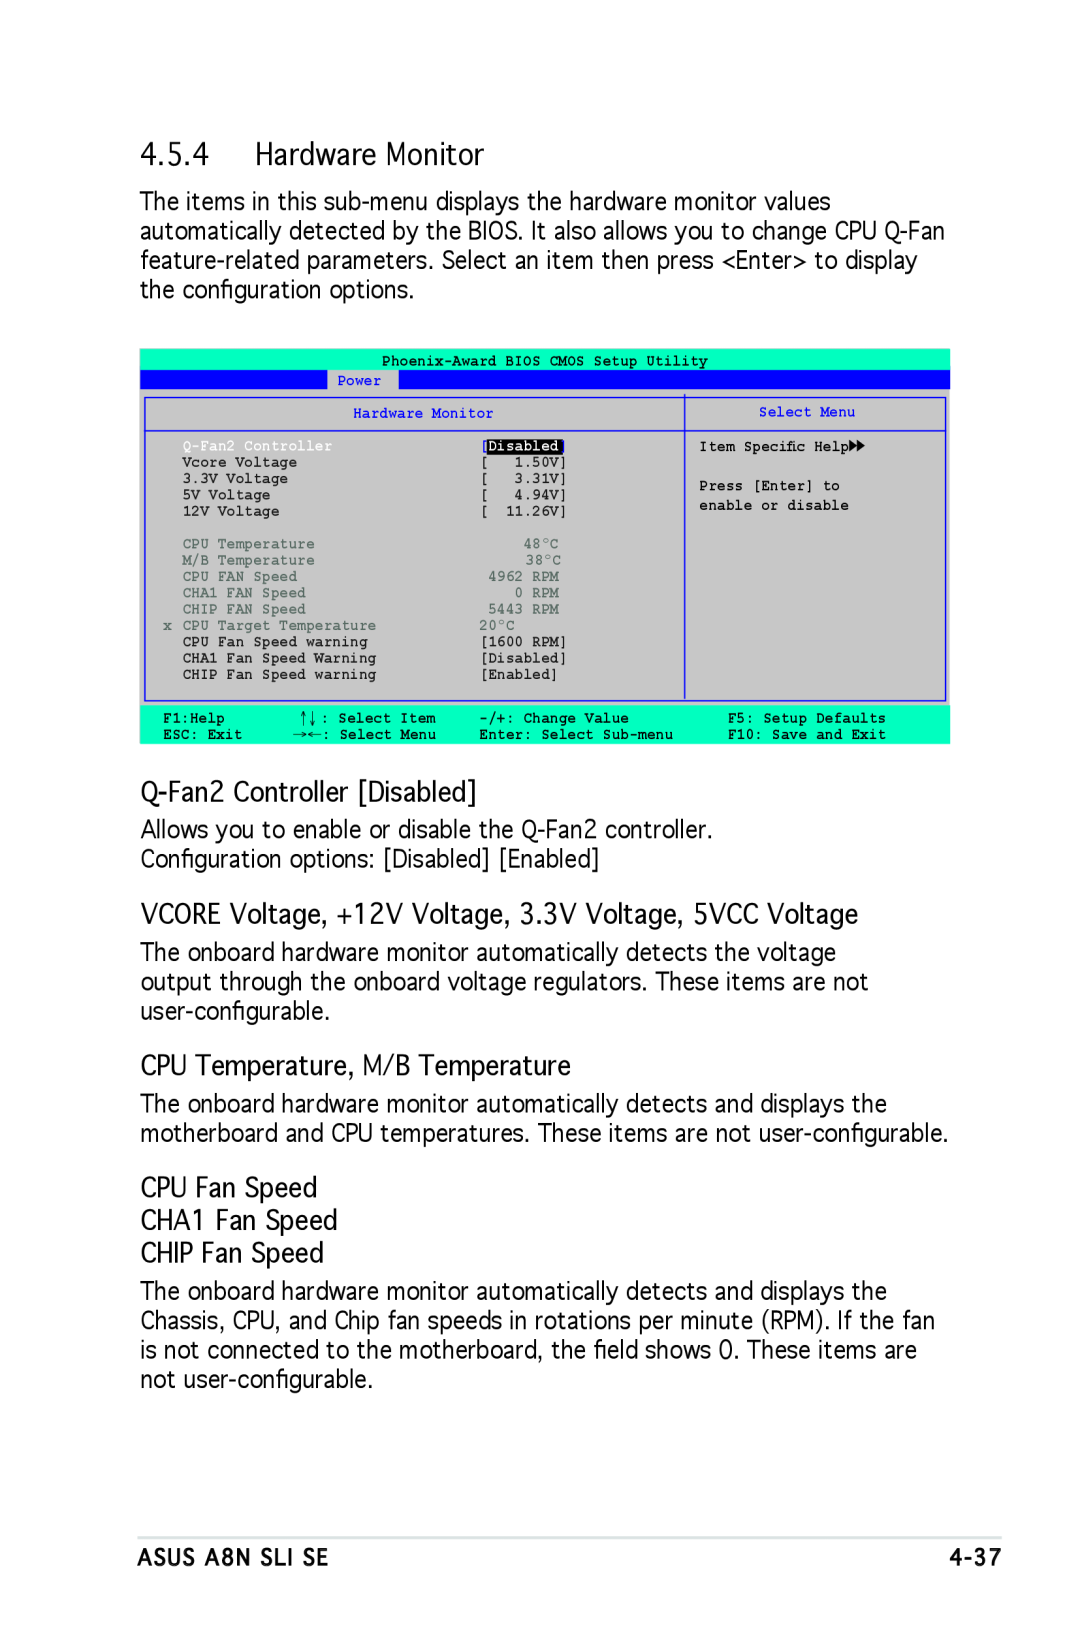 Asus A8N-SLI SE Hardware Monitor, Q-Fan2 Controller Disabled, VCORE Voltage, +12V Voltage, 3.3V Voltage, 5VCC Voltage 